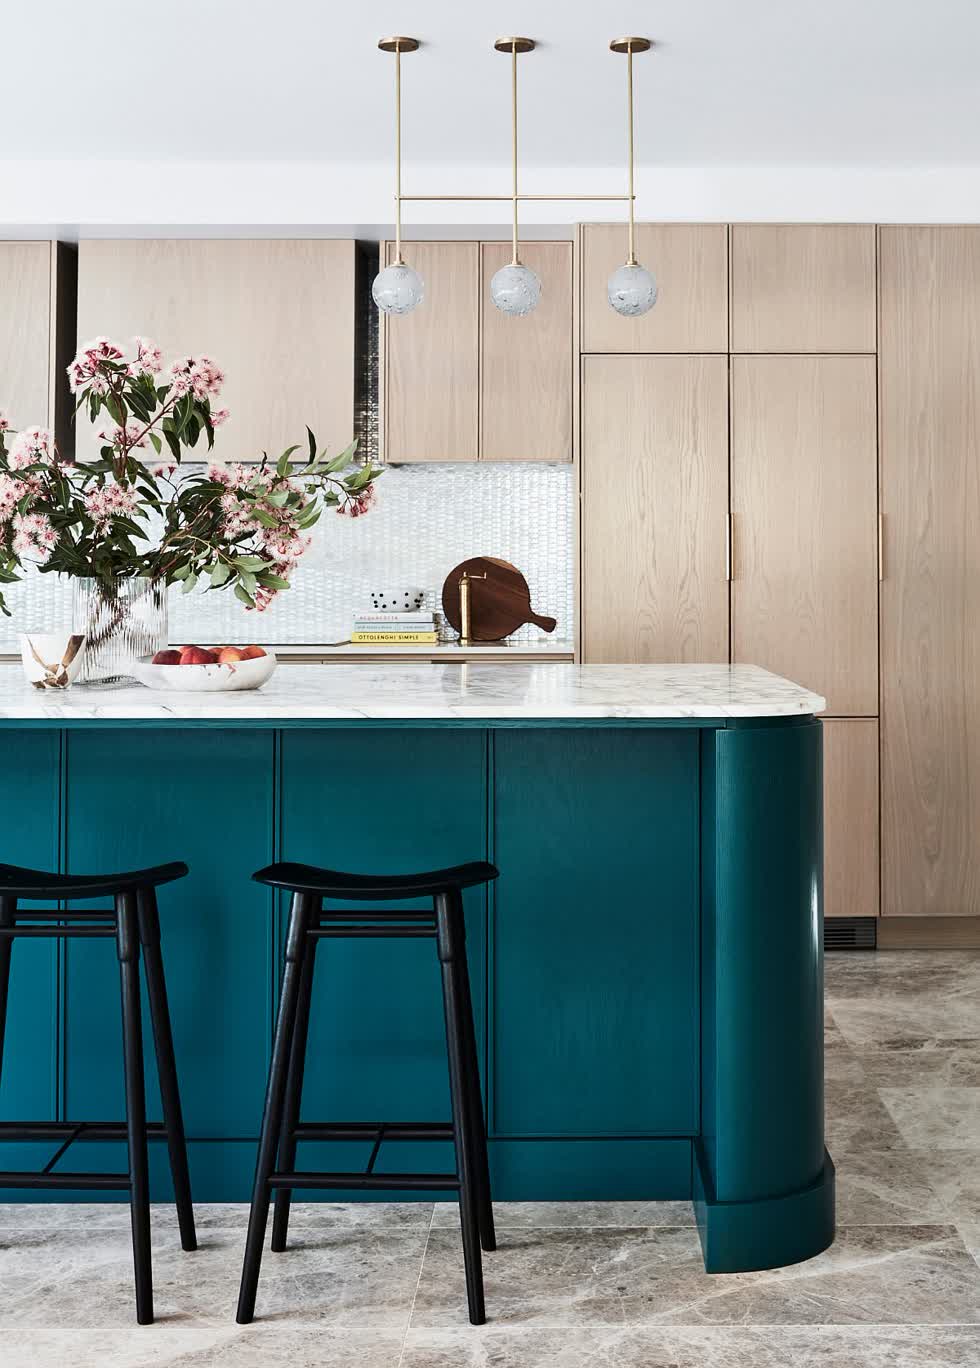   Bổ sung cho nhà bếp của bạn bằng cách nâng cấp với đảo bếp màu ngọc lam nổi bật và mặt bàn bằng đá cẩm thạch.  